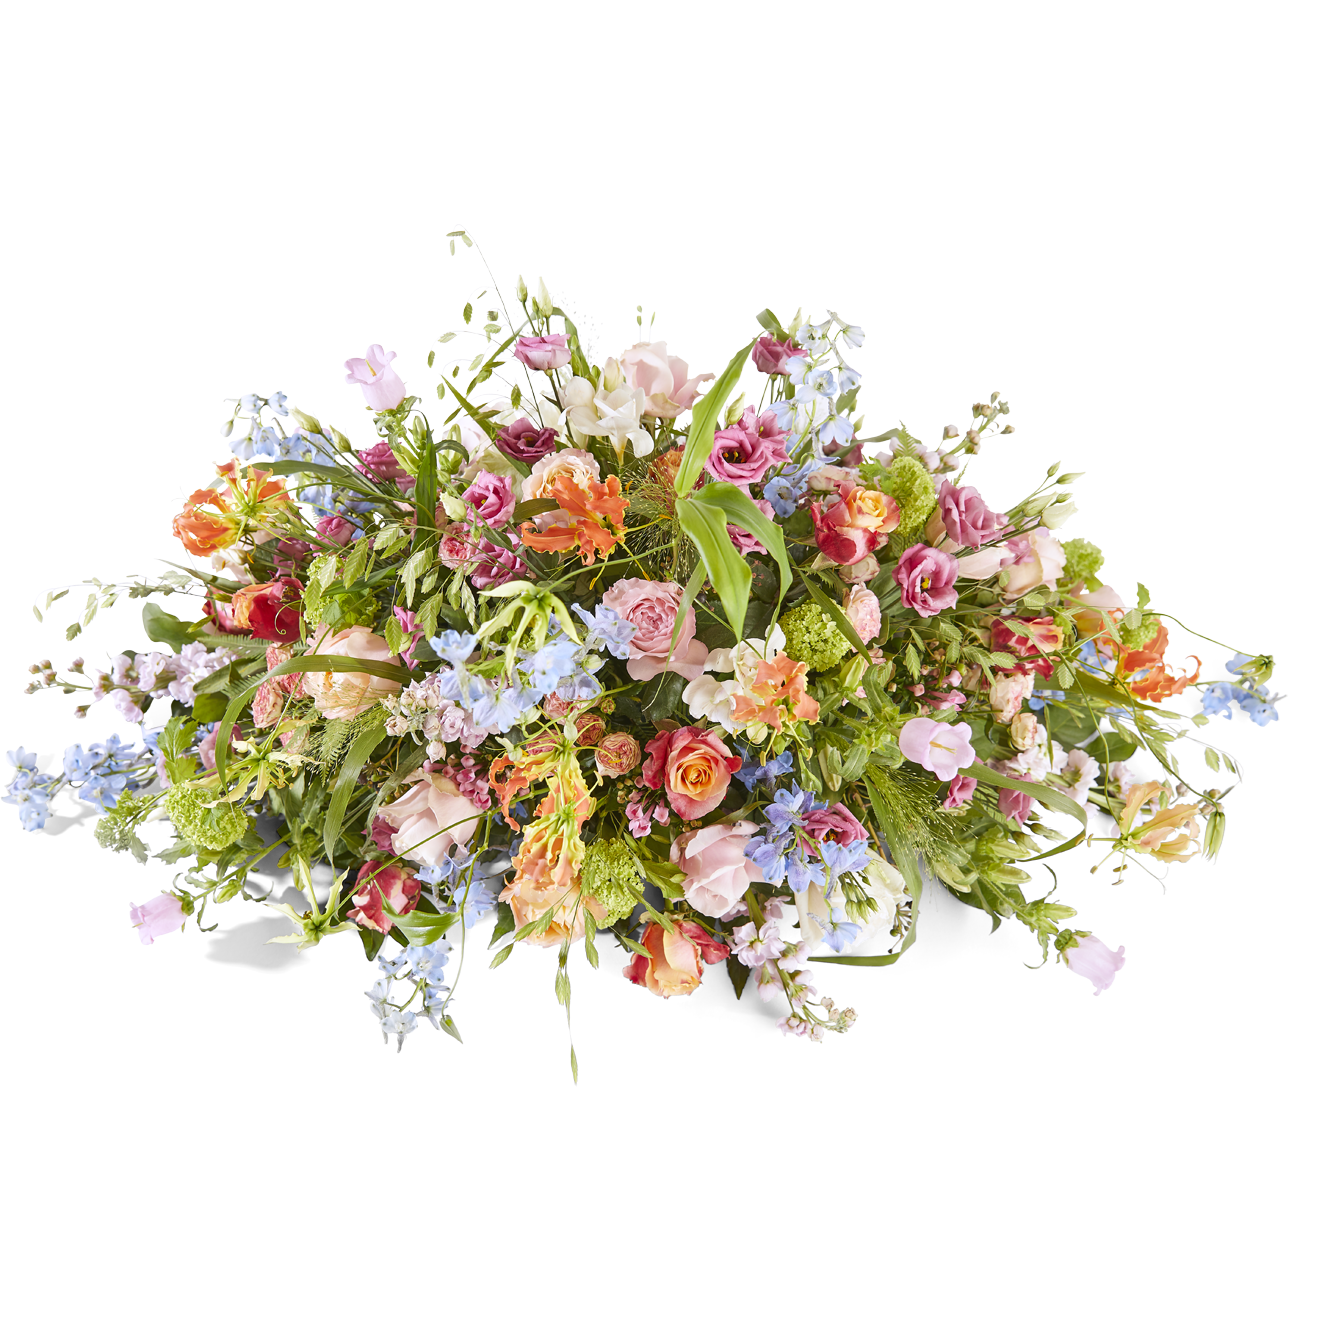 product image for Funeral - Flower splendor